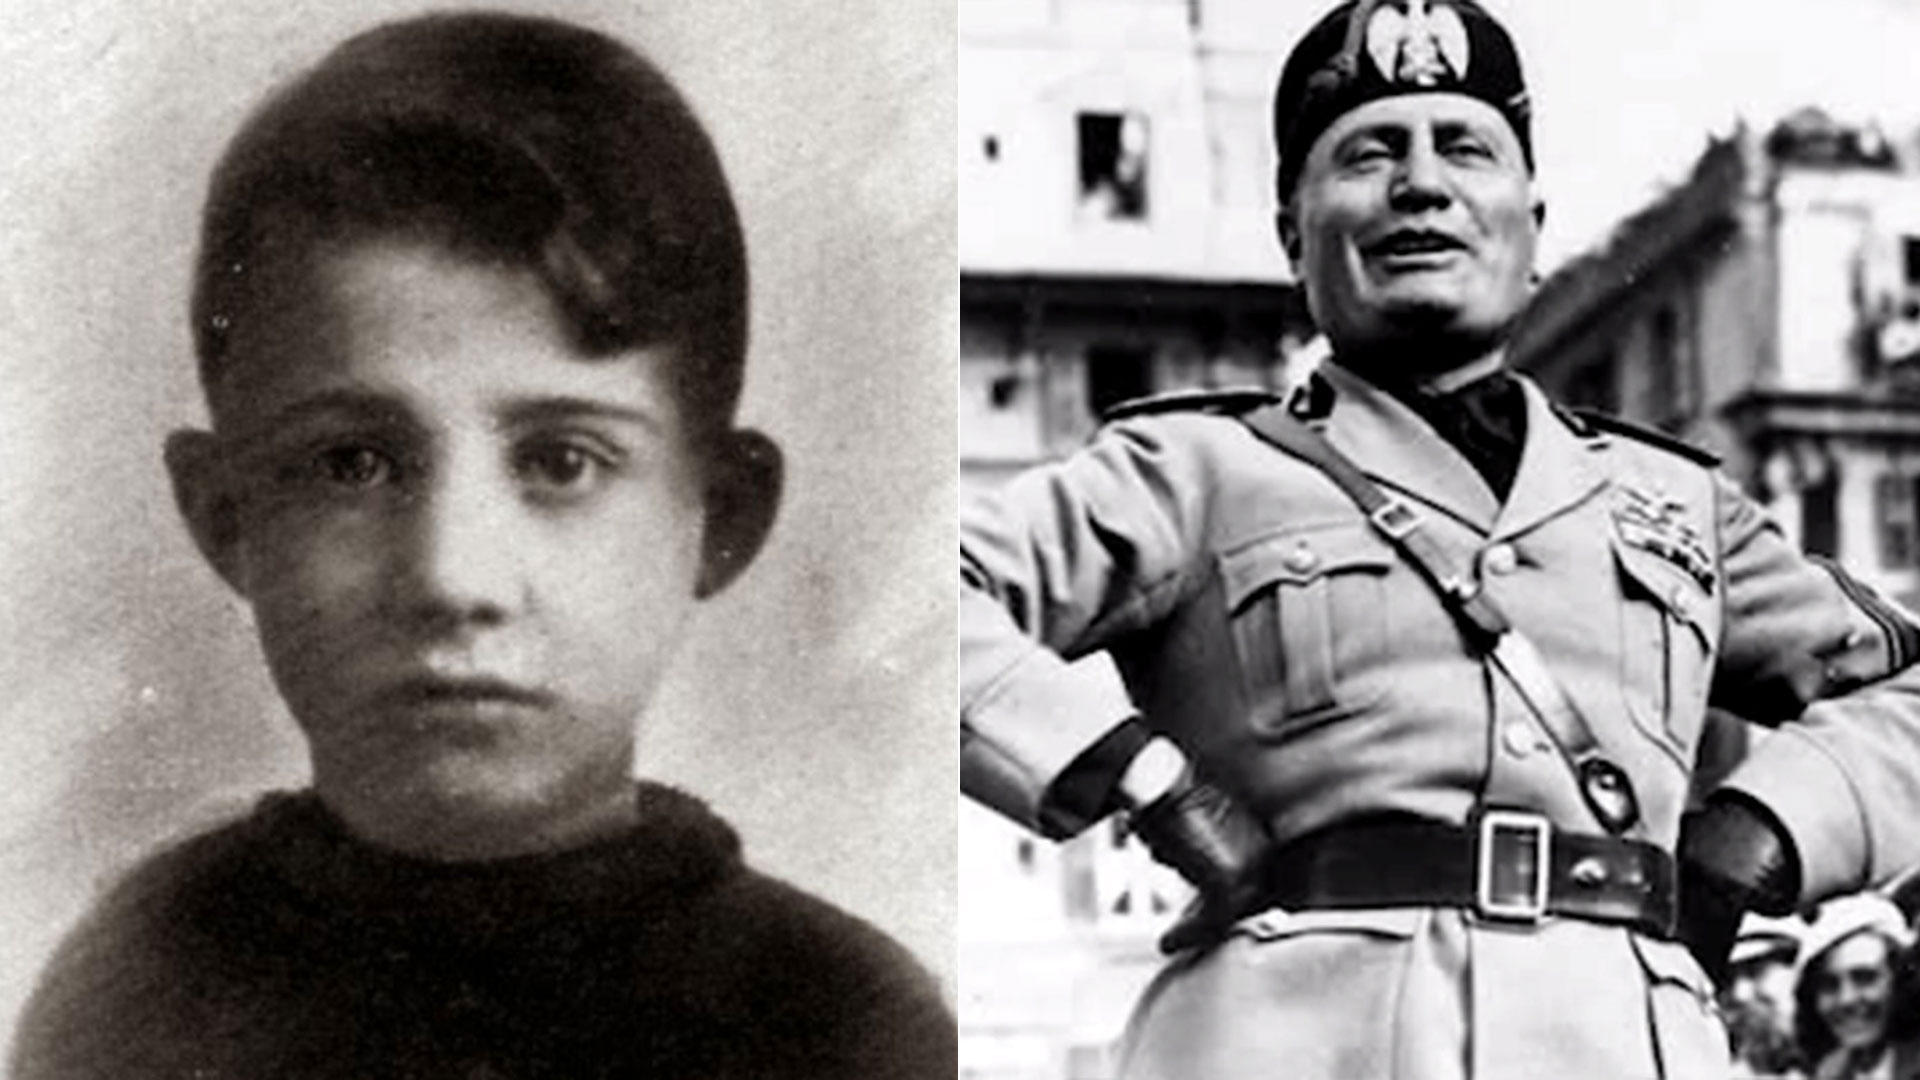 Anteo Zamboni de 15 años disparó contra Benito Mussolini. Apenas alguien lo señaló, decenas de personas se lanzaron sobre él. Pocos segundos después estaba muerto